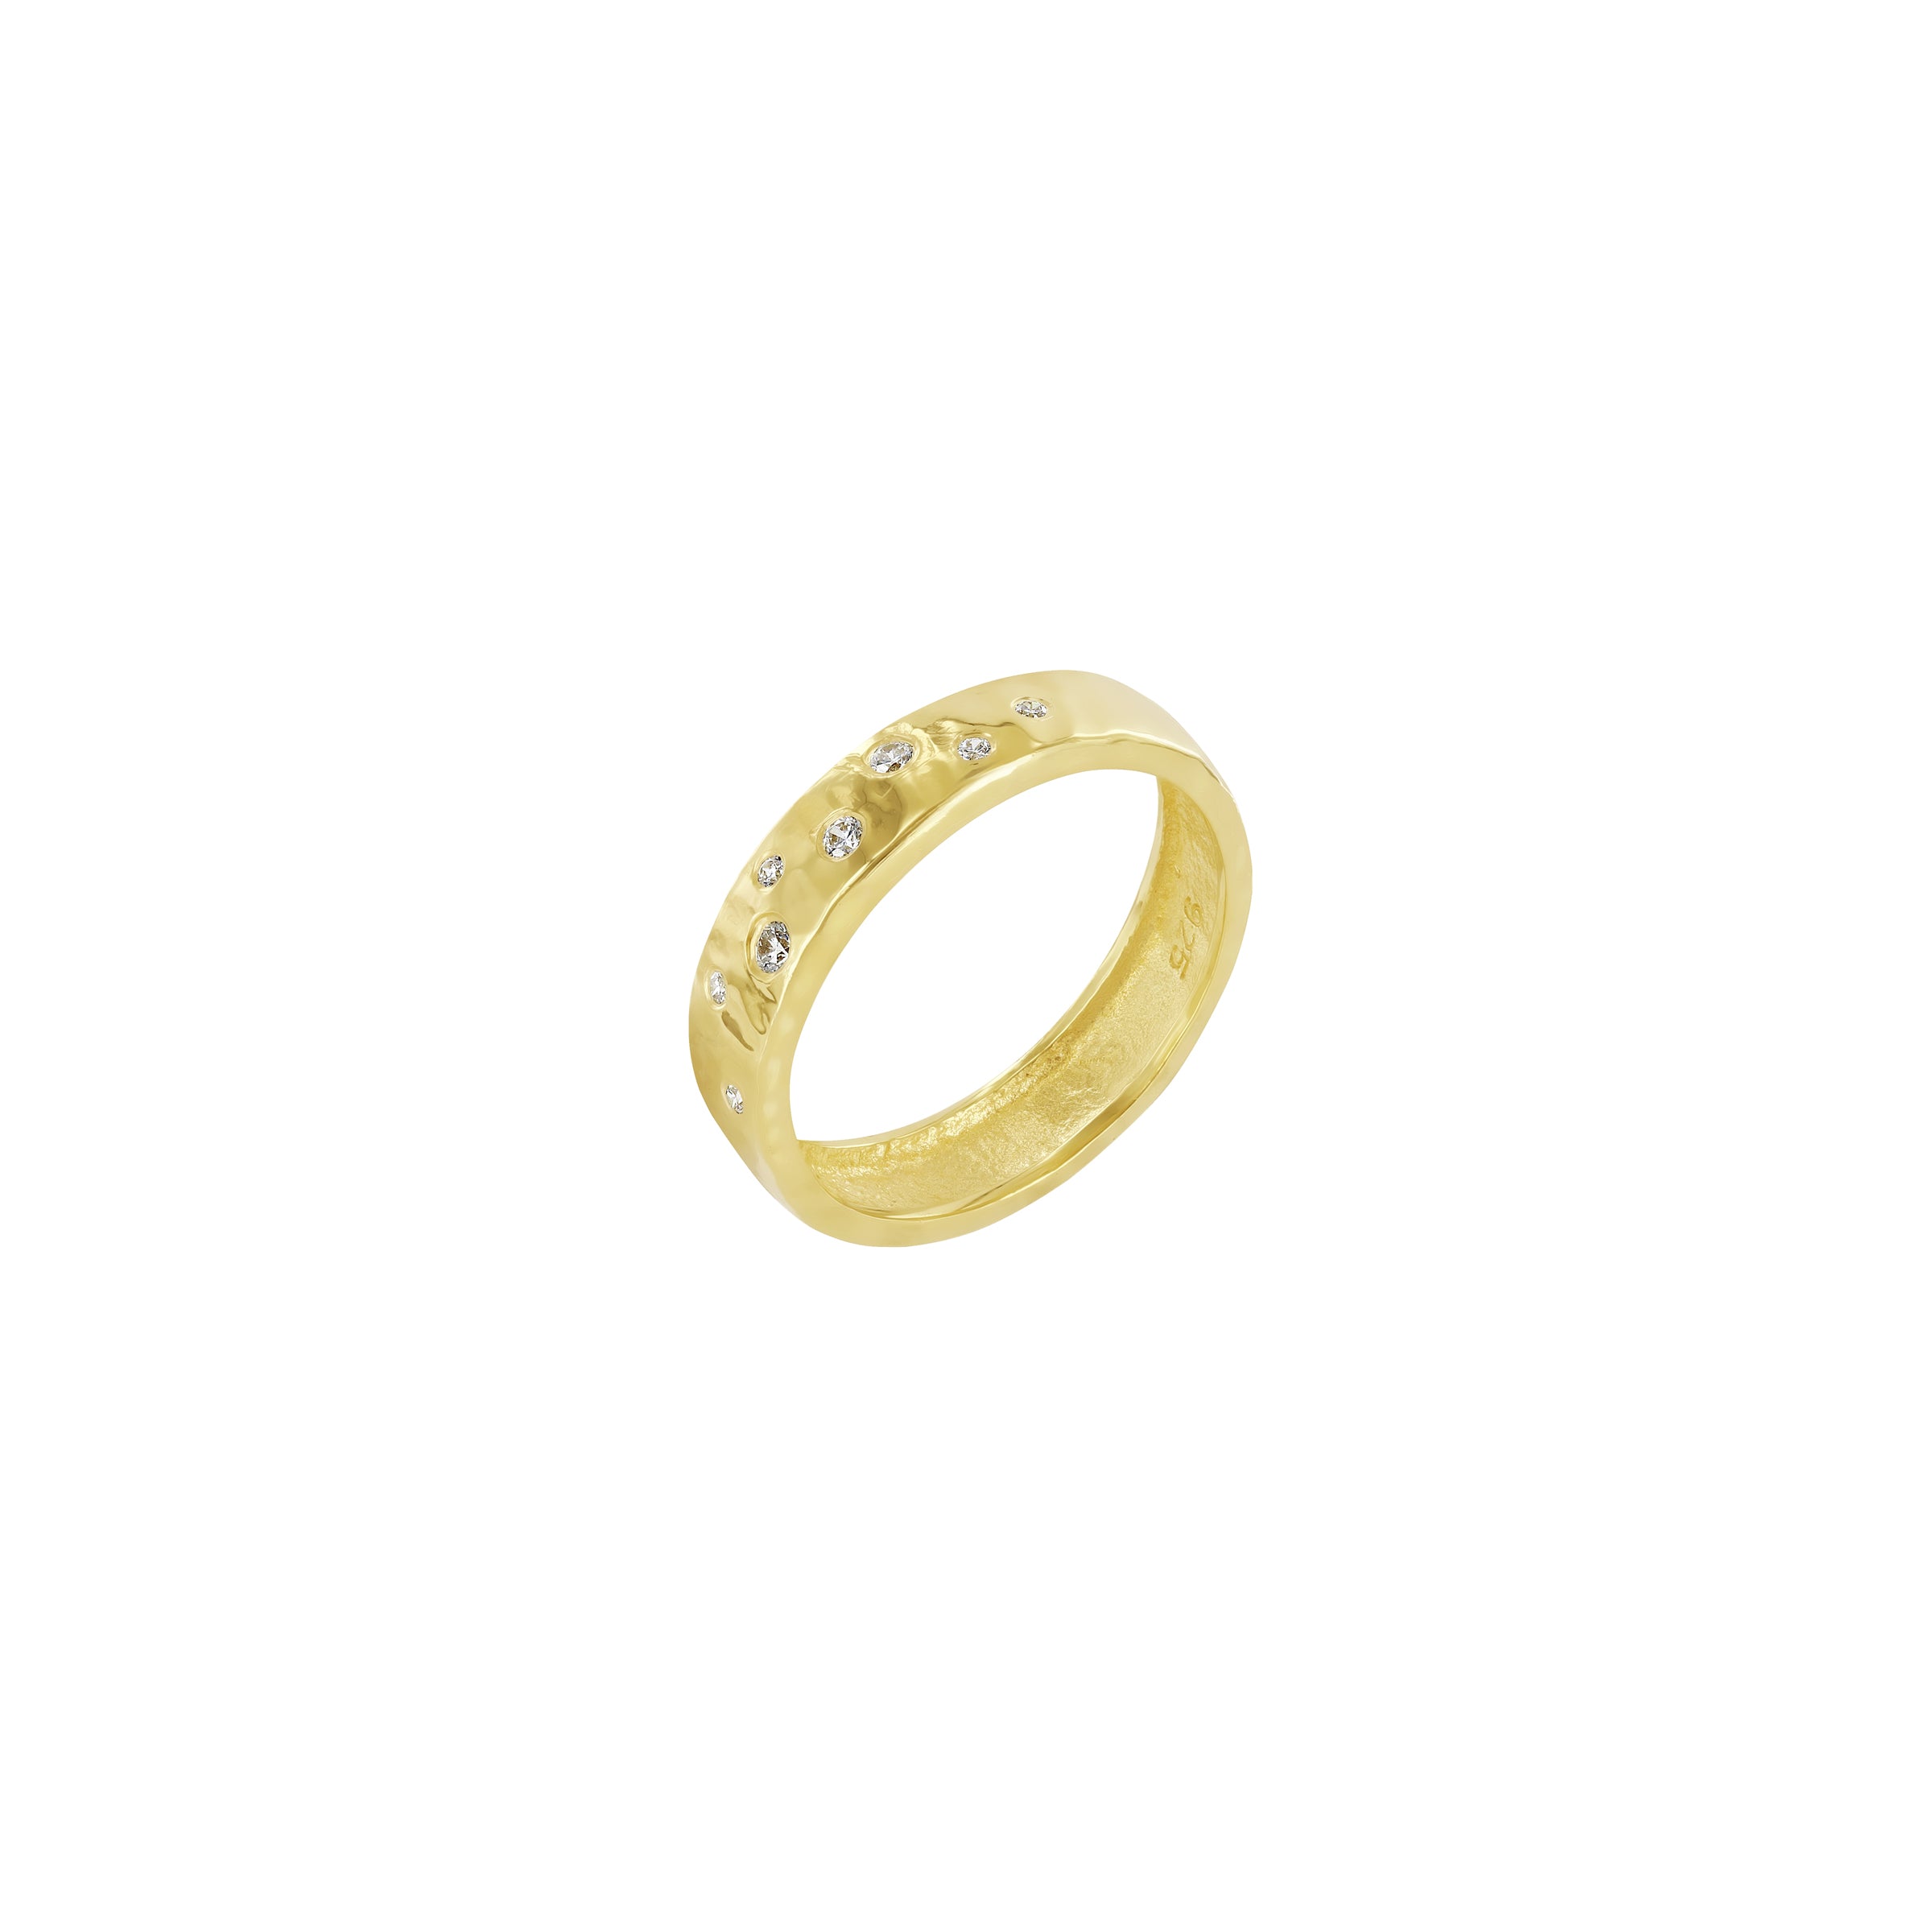 Zephyr Oracle Ring Gold Vermeil